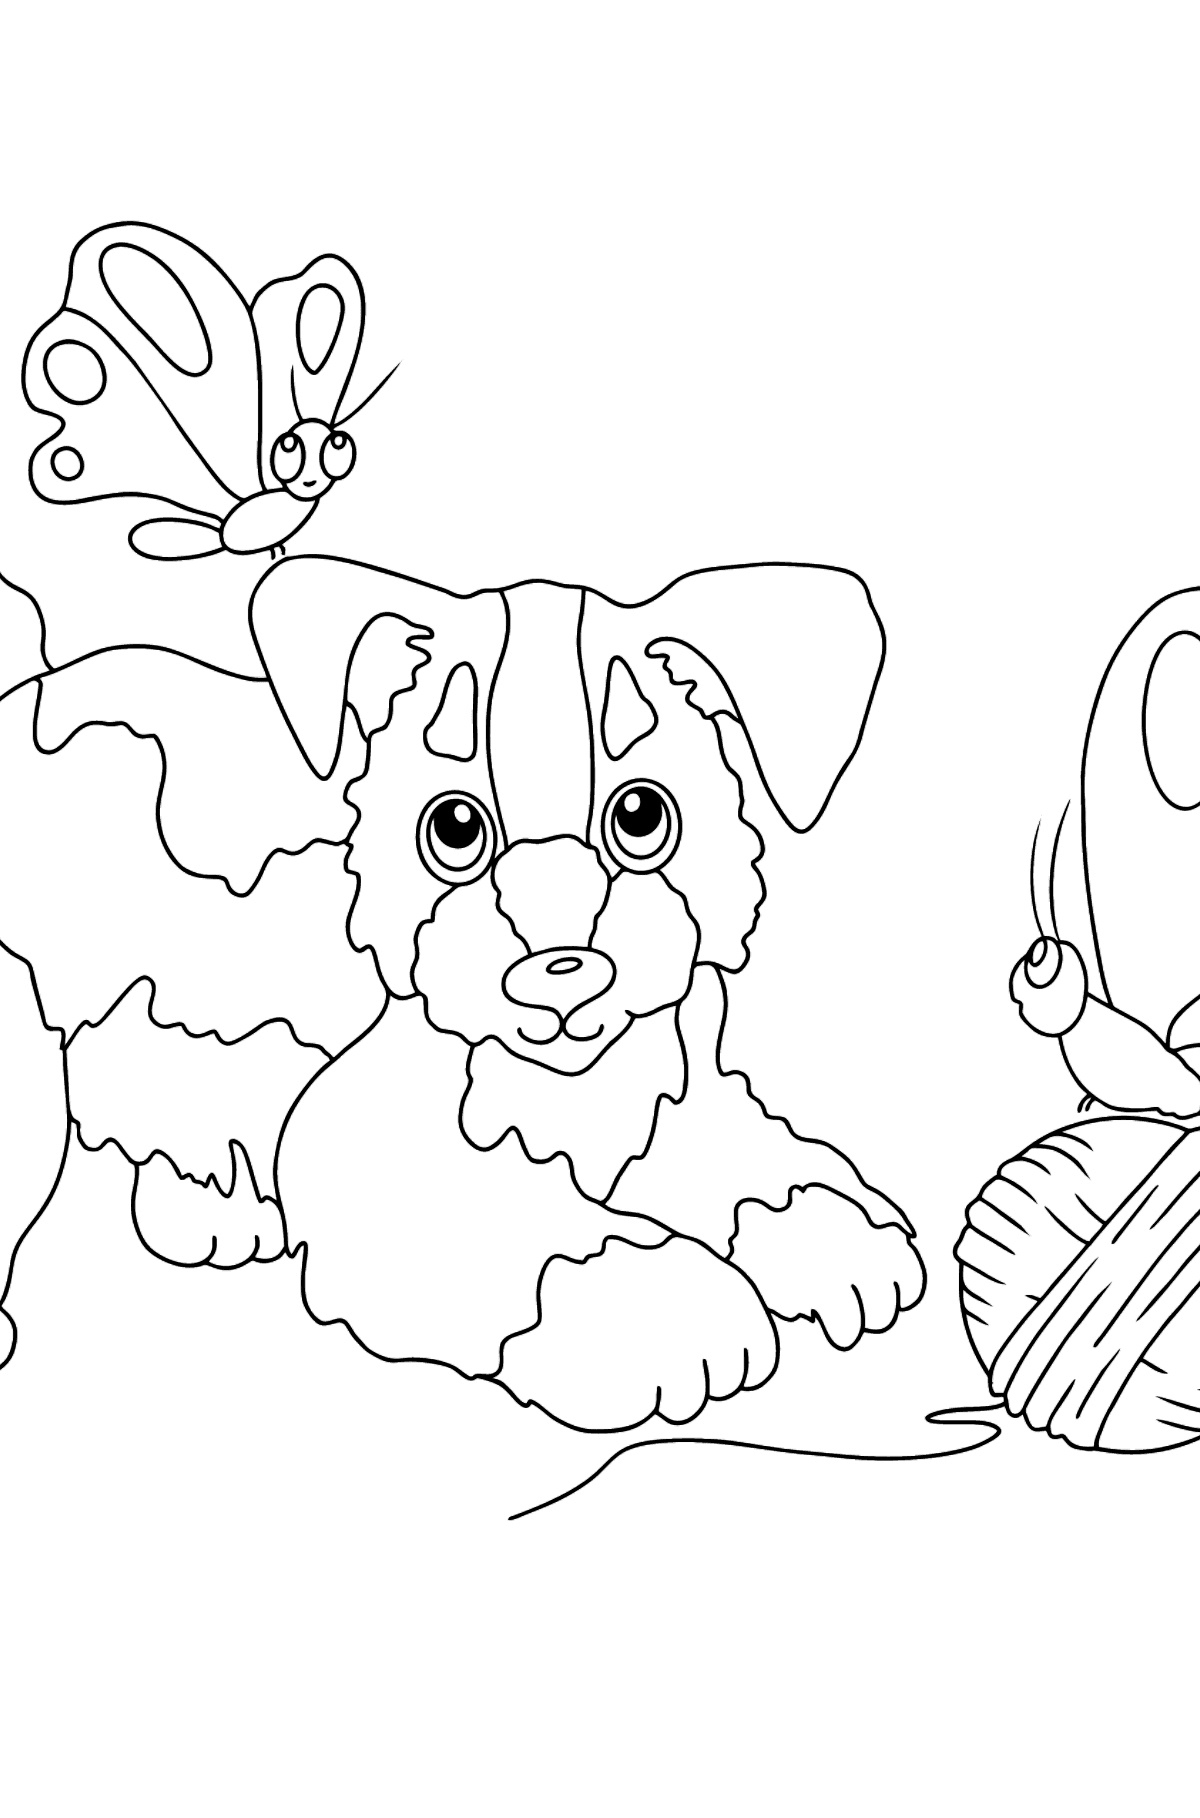 Dibujo para Colorear - Un Perro está Jugando con un Bola de Estambre y con Mariposas - Dibujos para Colorear para Niños